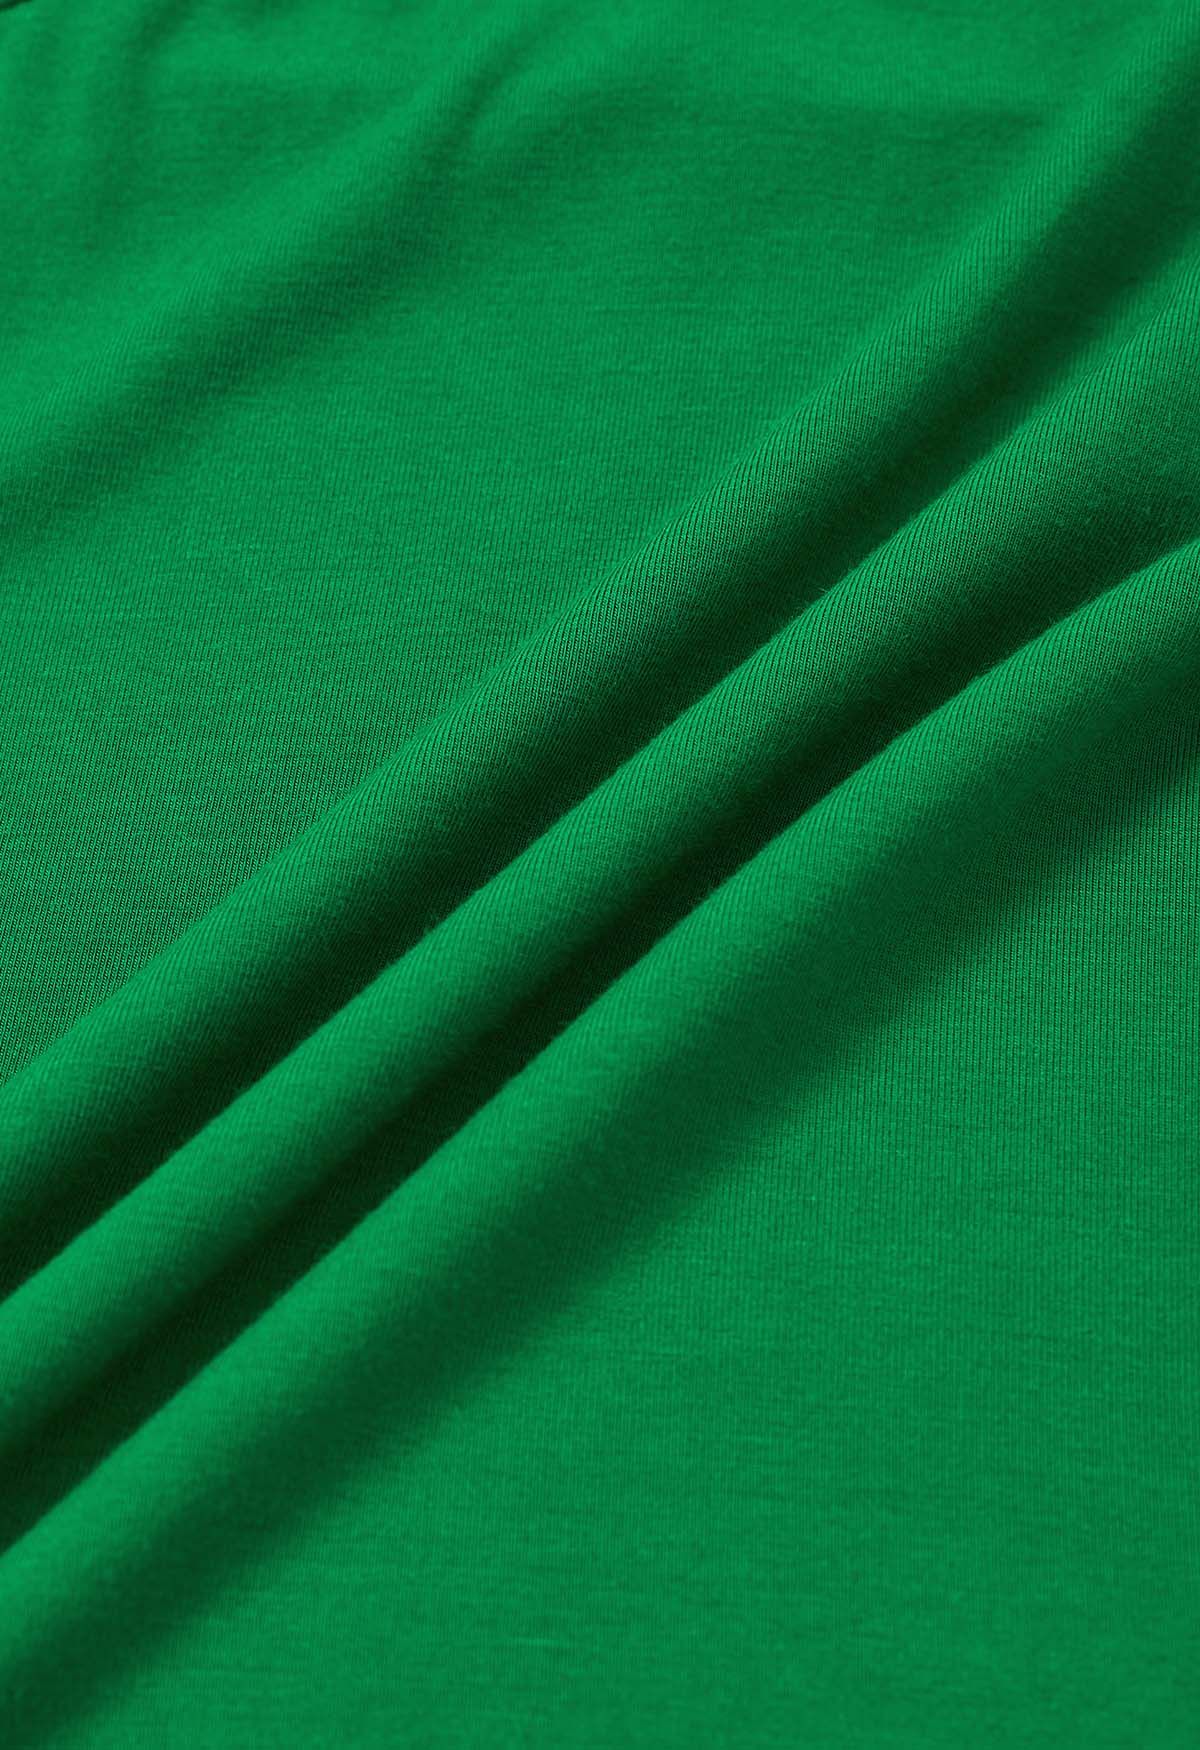 Optimal Halter V-Neck Sleeveless Top in Green